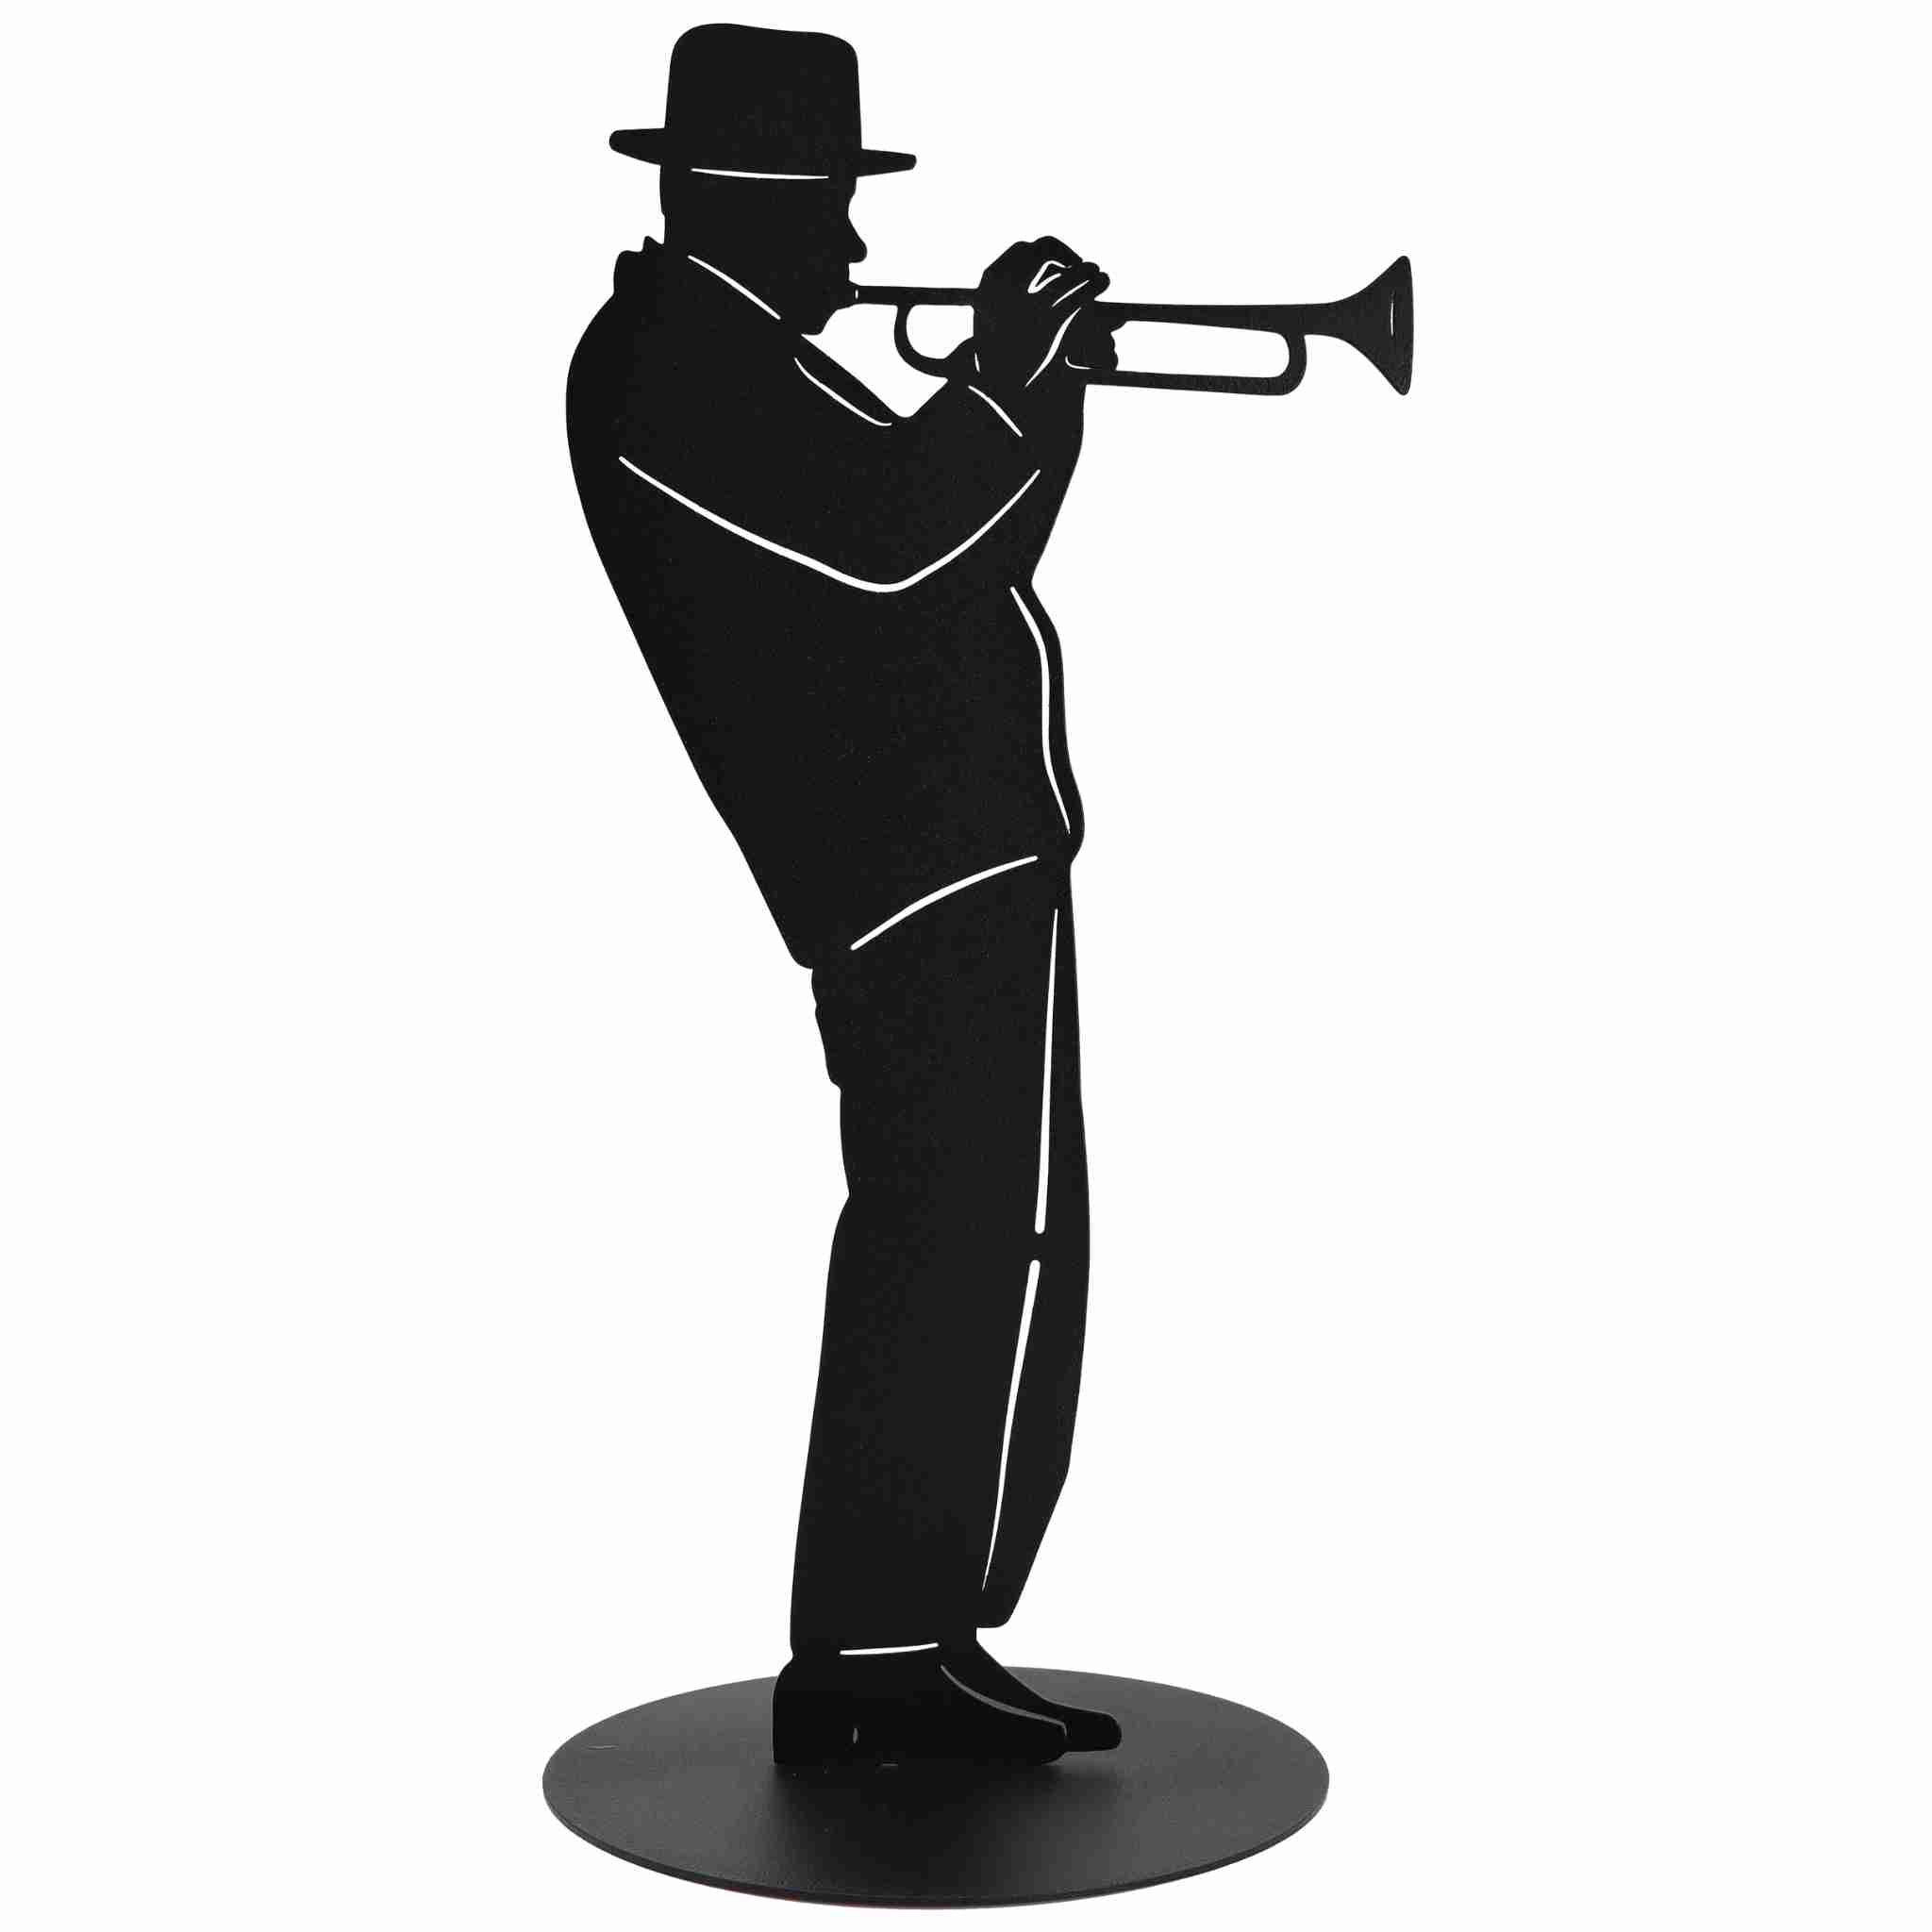 Einzigartiges Geschenk für Musikliebhaber: Unsere Trompeter Skulptur ist nicht nur eine Dekoration, sondern auch ein besonderes Geschenk, um die Leidenschaft für Musik stilvoll zu feiern.